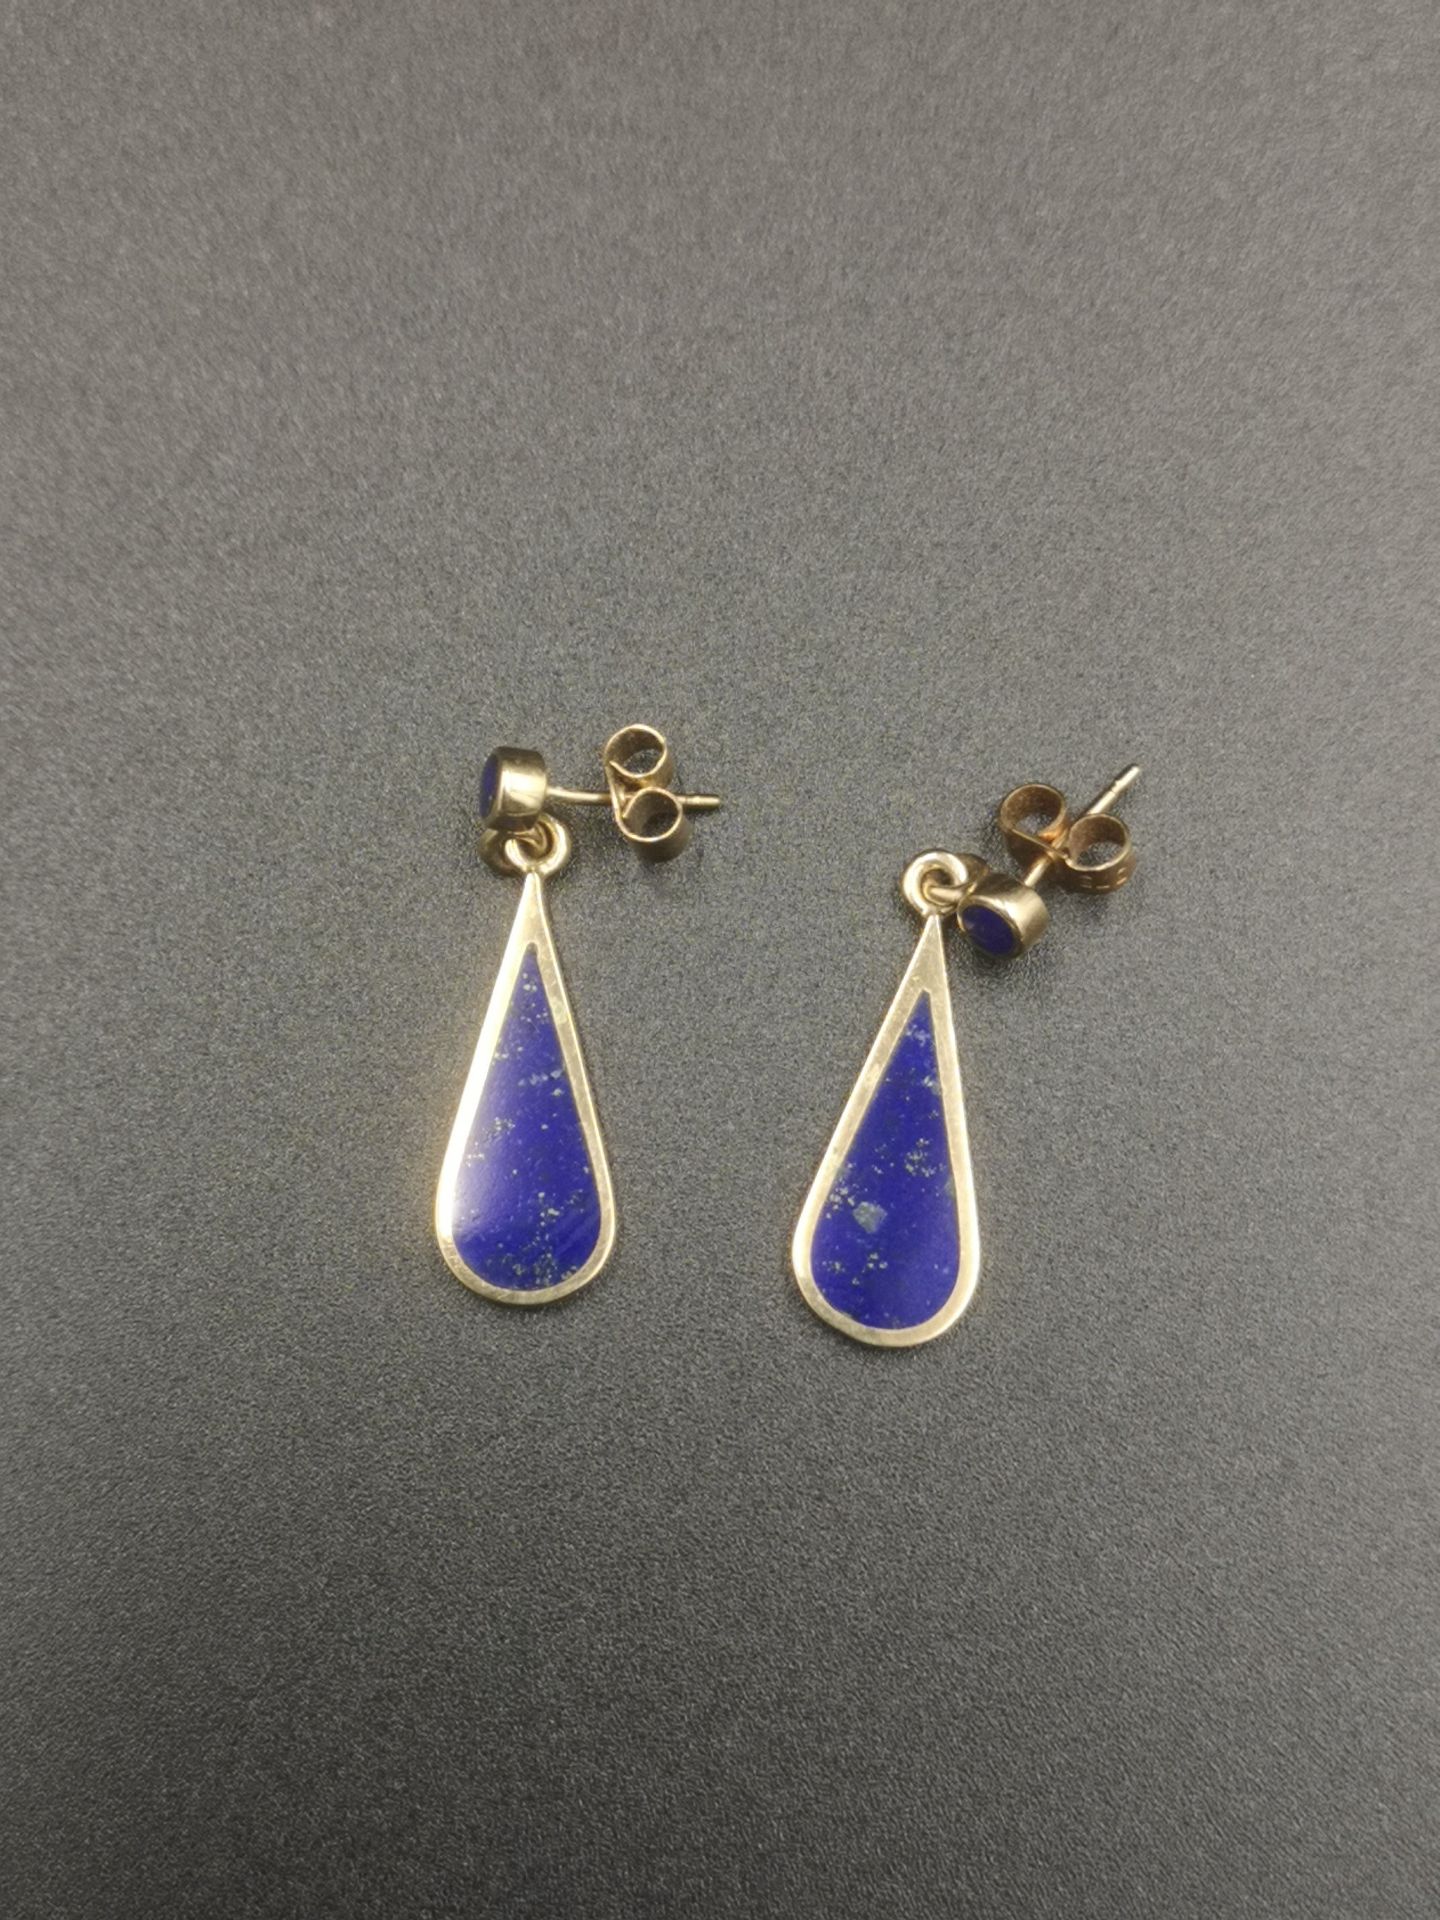 pair of 9ct gold drop earrings